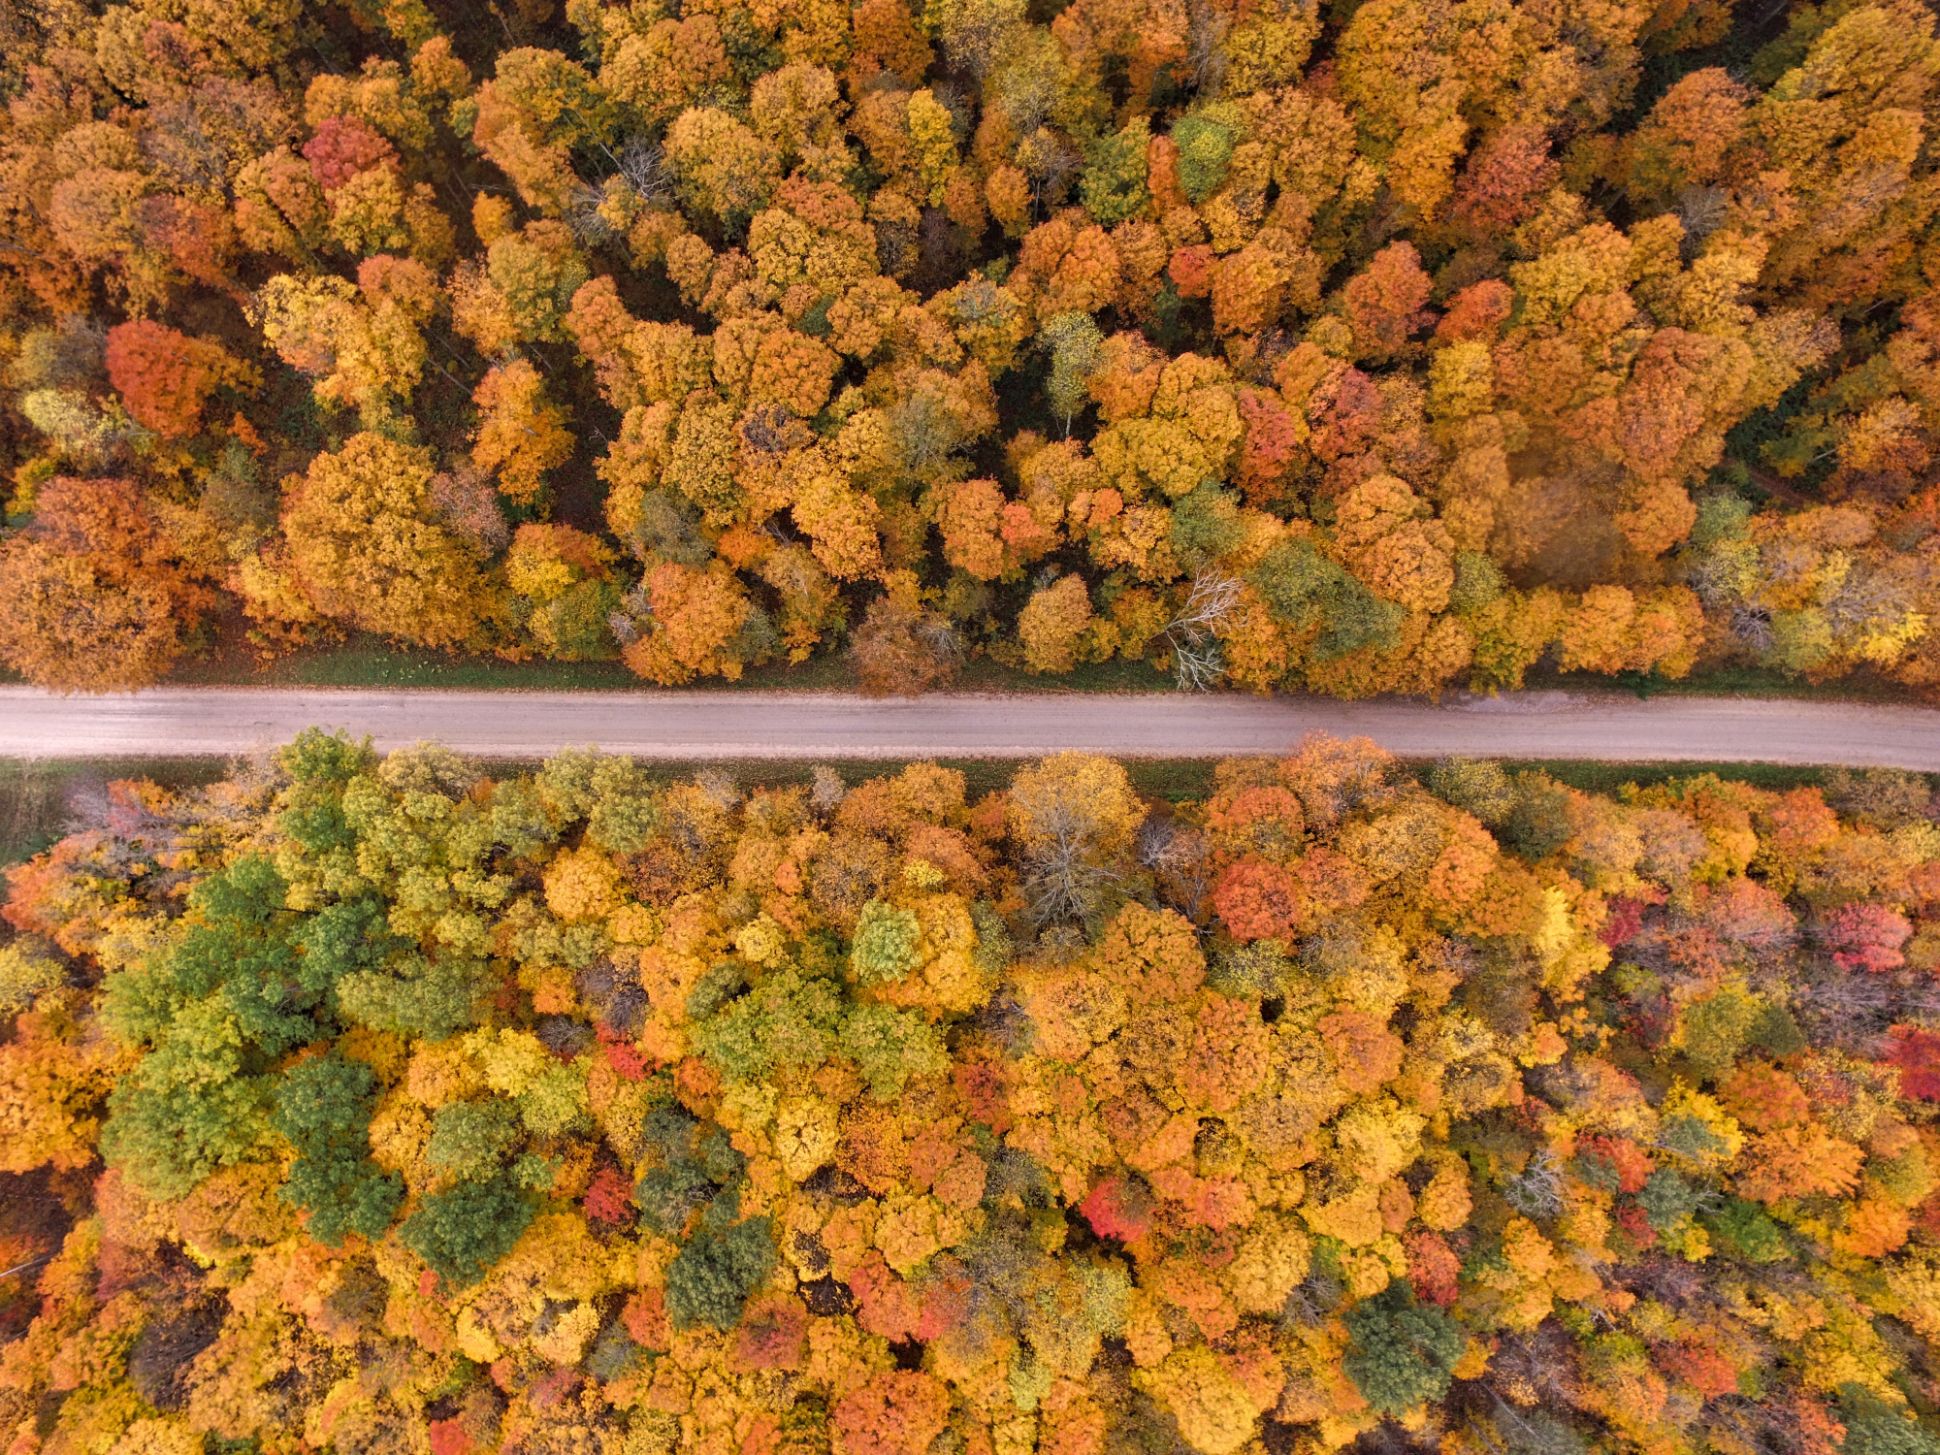 Luftaufnahme einer von herbstlich gefärbten Bäumen umgebenen Straße.